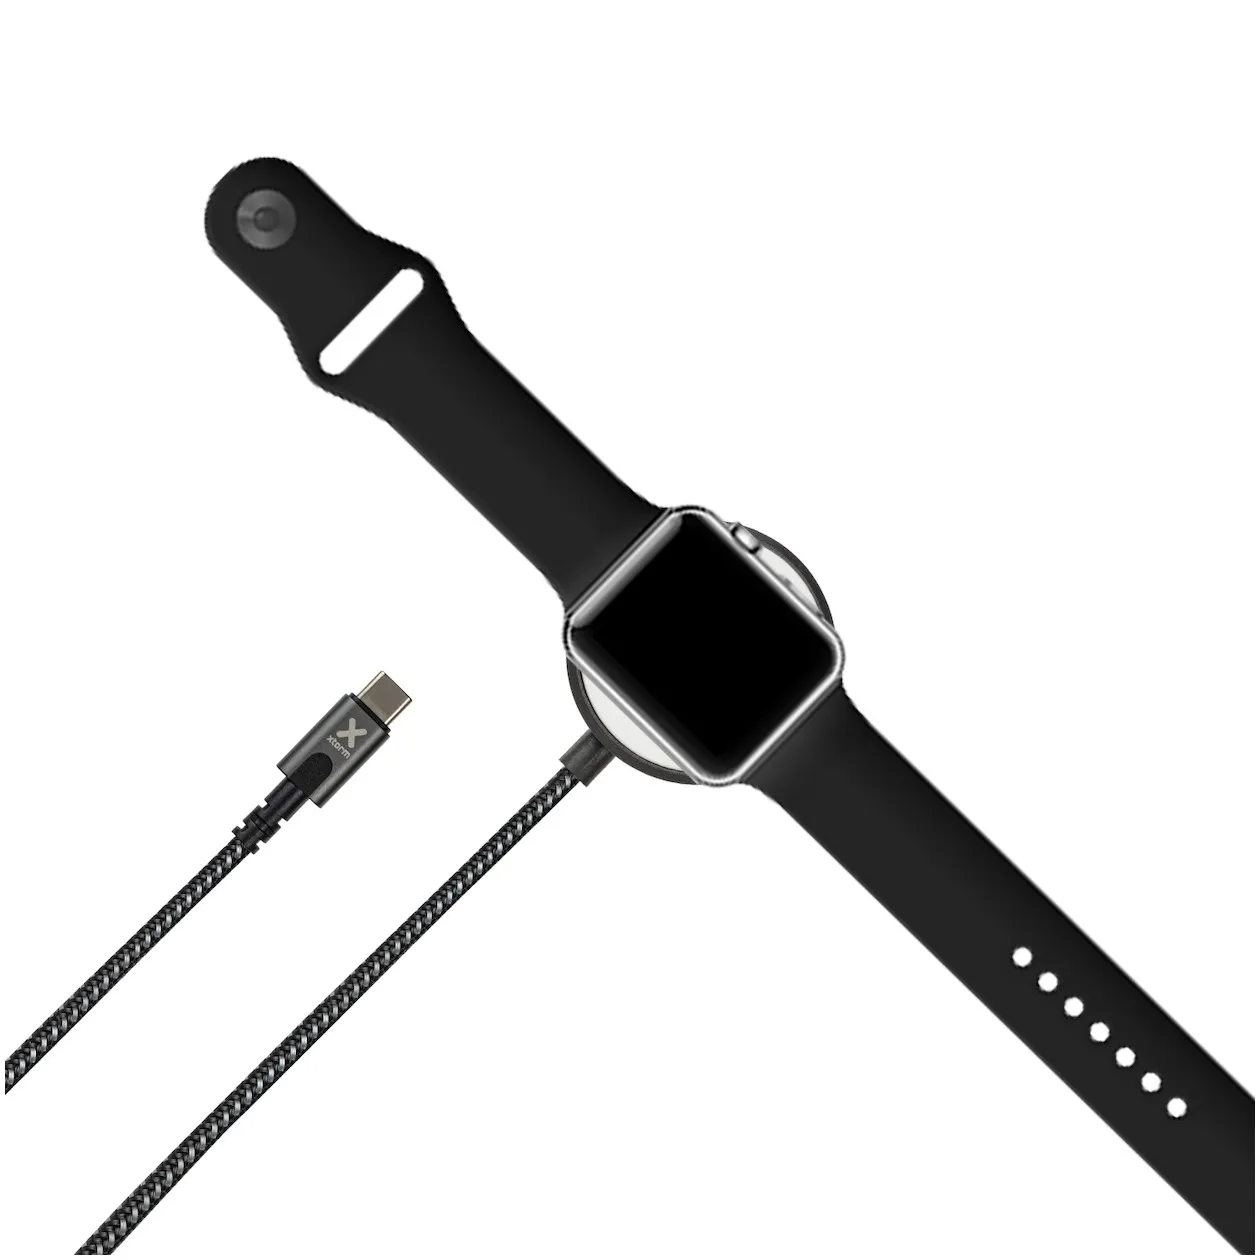 Xtorm Powerstream laadkabel voor Apple Watch (1,5m)